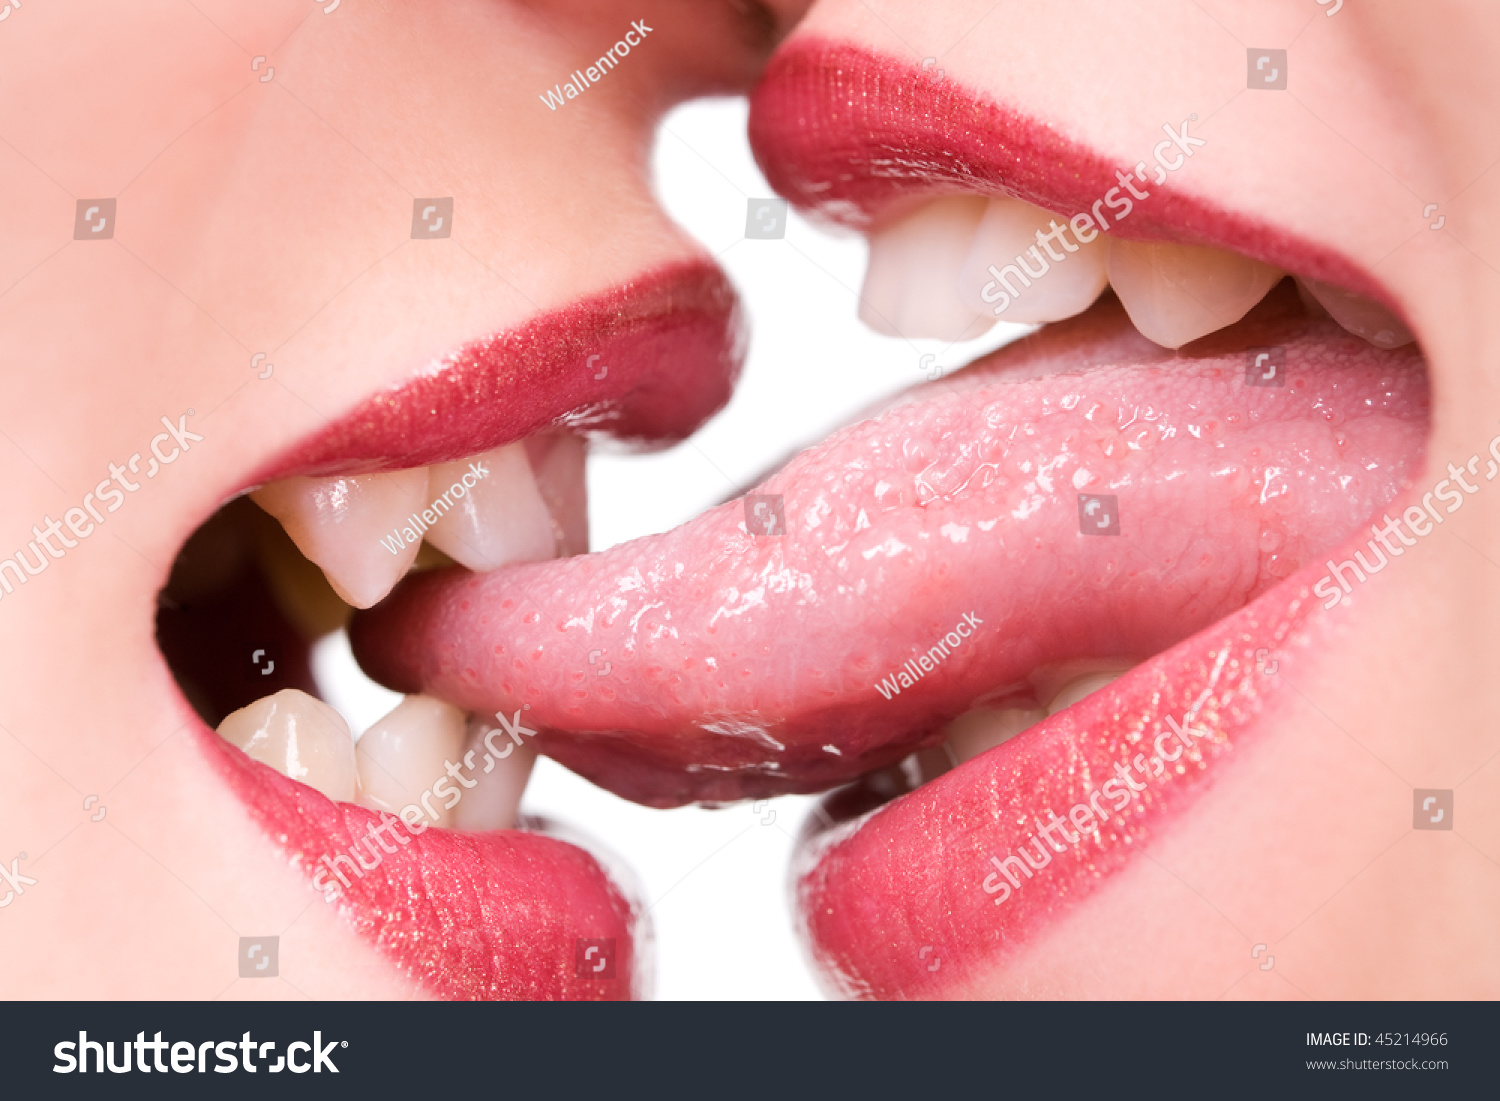 Девушка лижет губы. Губы с языком фото. Поцелуй в губы. Женский поцелуй. Поцелуй с языком.